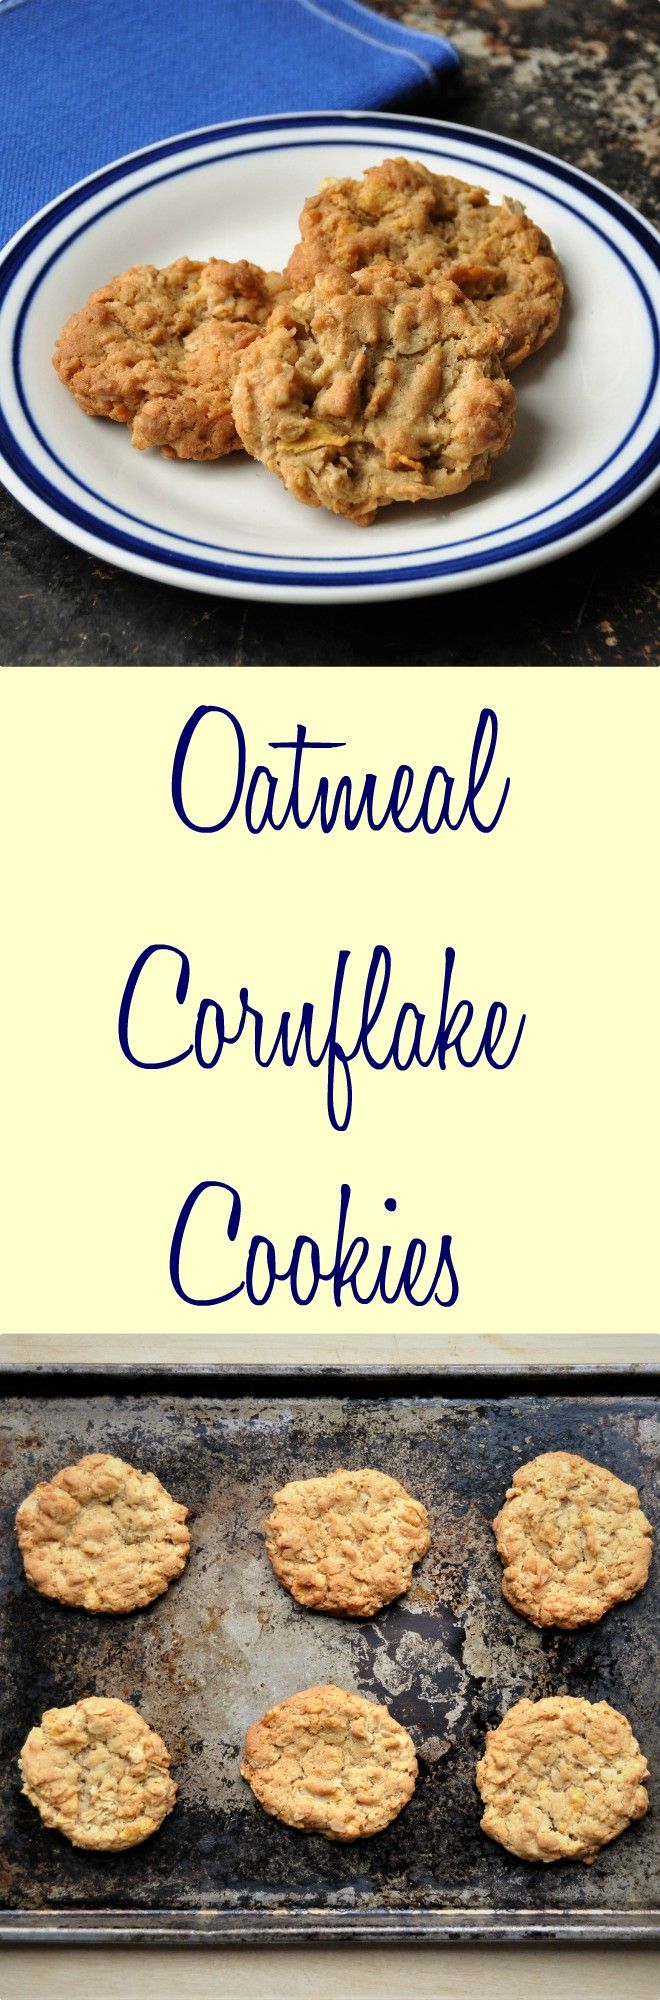 Oatmeal Cornflake Cookies